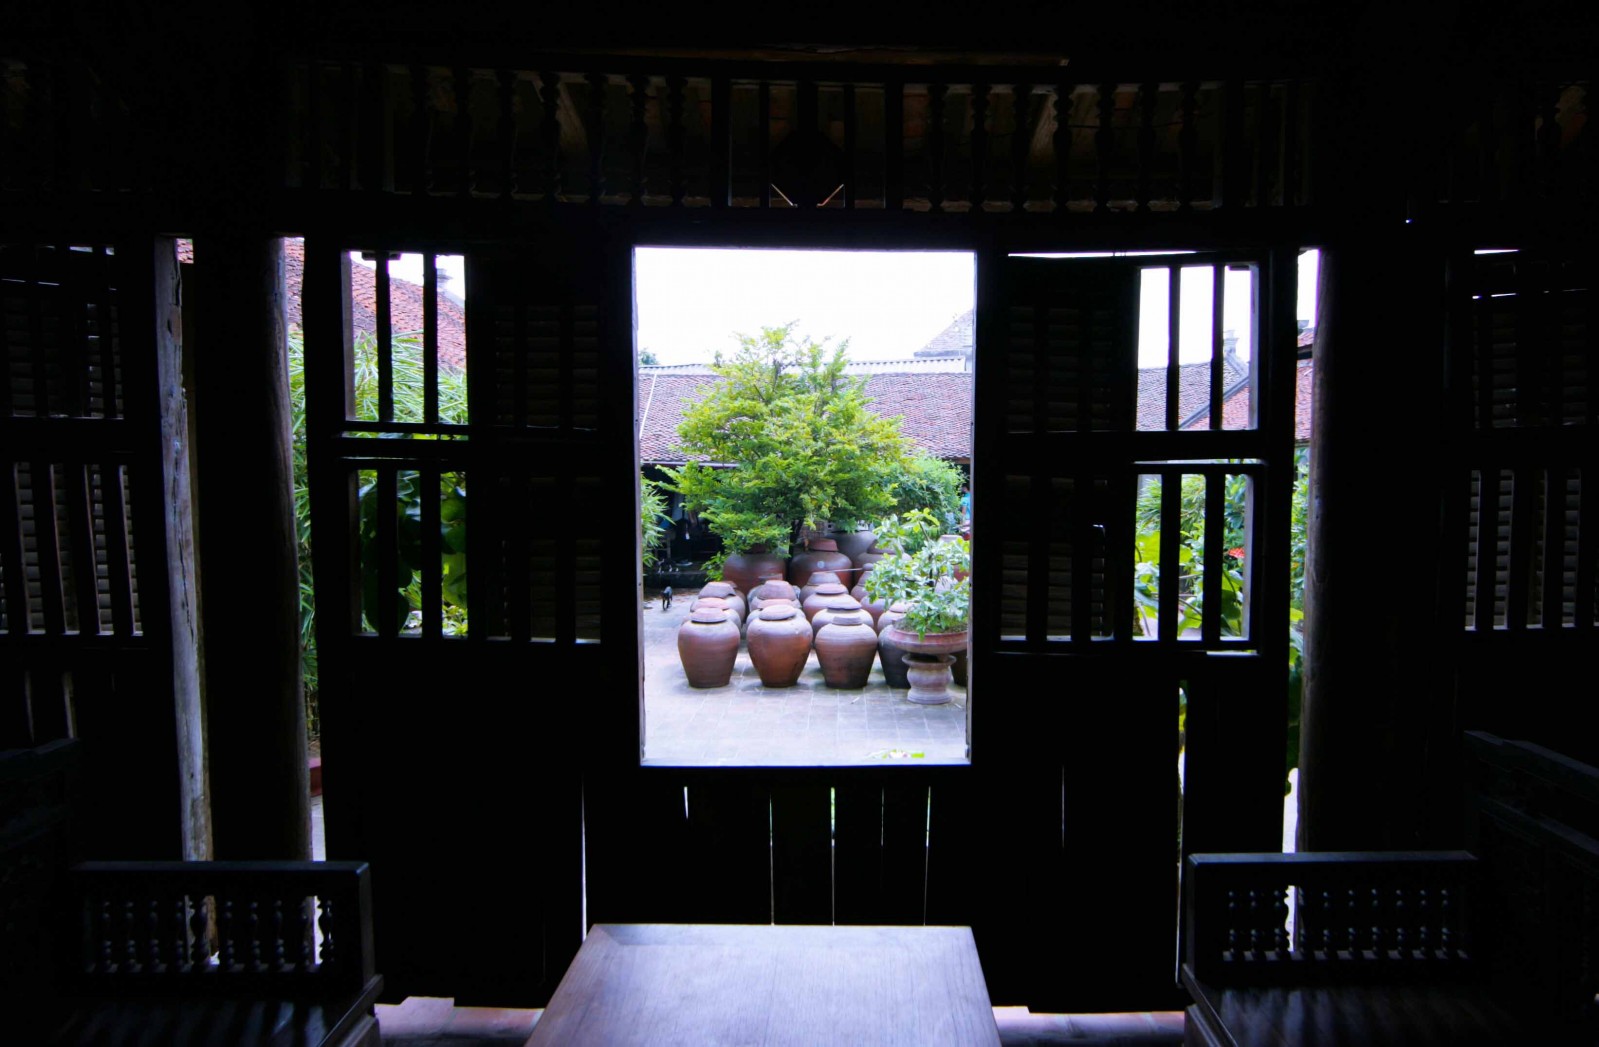 Làm tương vốn là việc nông gia, dân Đường Lâm nhà nào cũng có chum tương như bảo vật. Thăm ngôi nhà cổ của ông Hà Nguyên Huyến được xây dựng năm 1848, những chiếc chum Phù Lãng chín già chứa tương thành phẩm thơm ngào ngạt nơi góc sân.